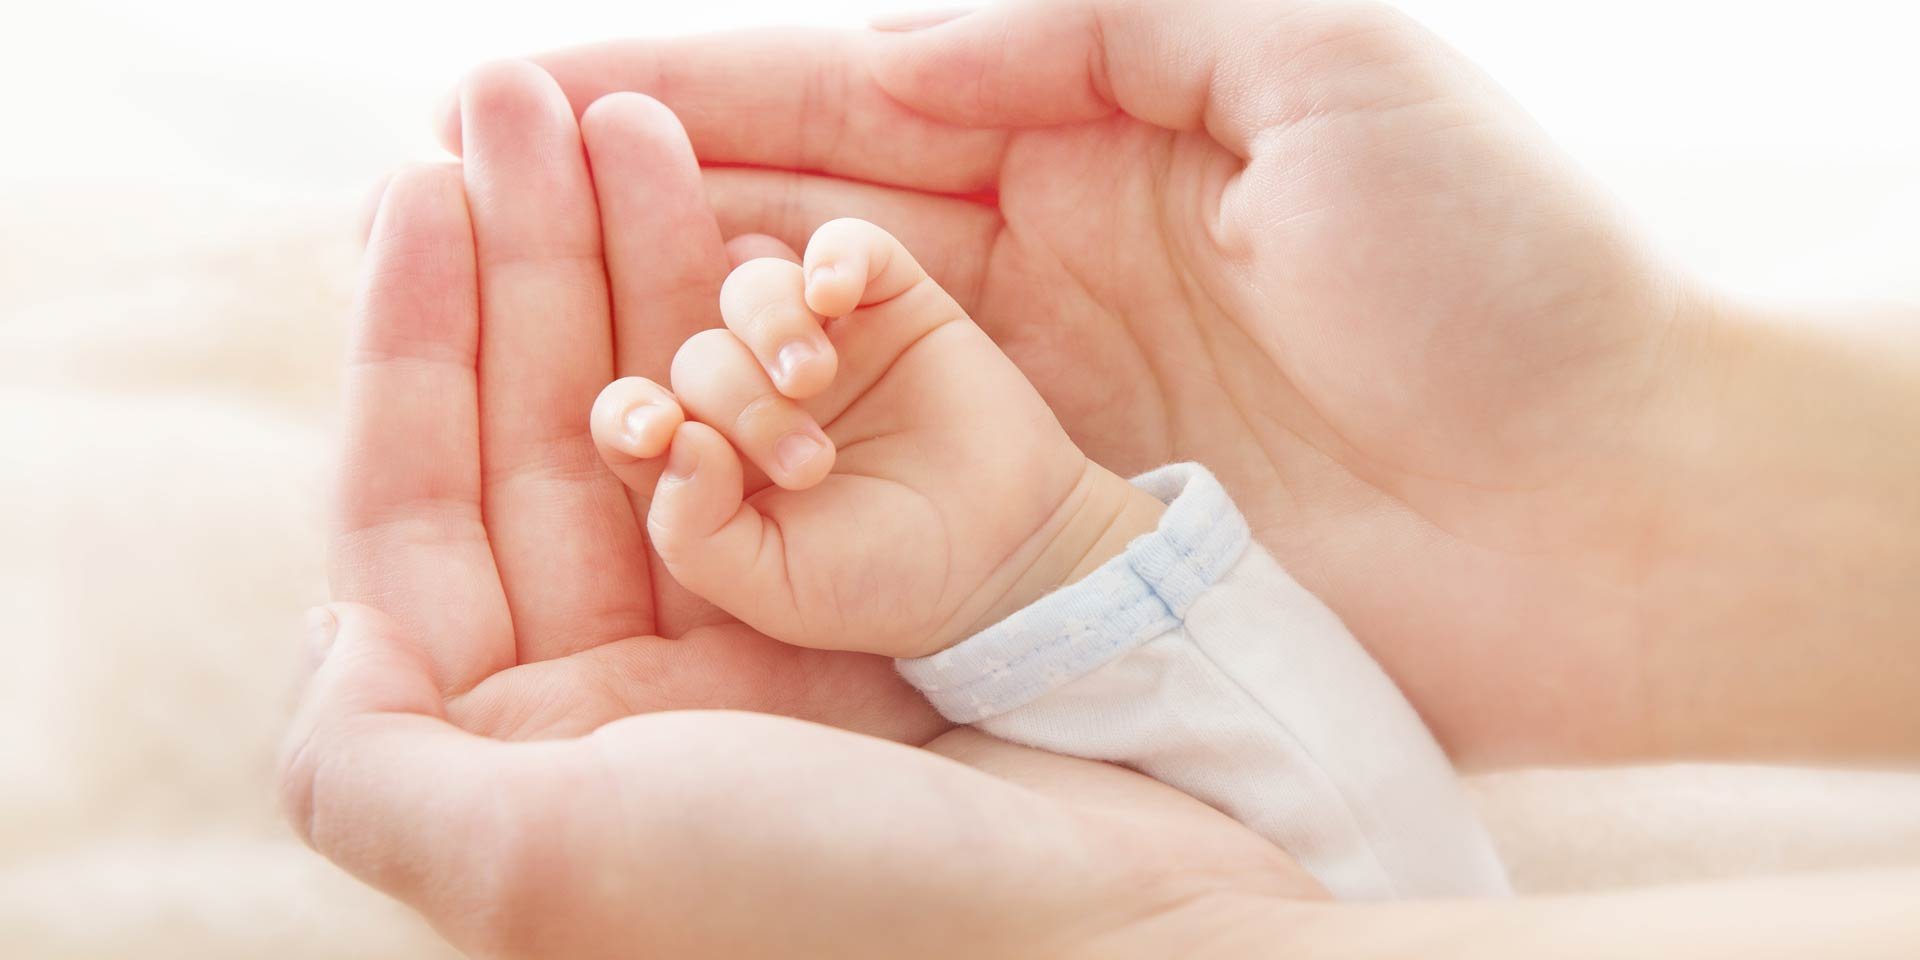  Sute de copii născuţi pe uter transplantat. Ce spune un cunoscut medic din Iaşi